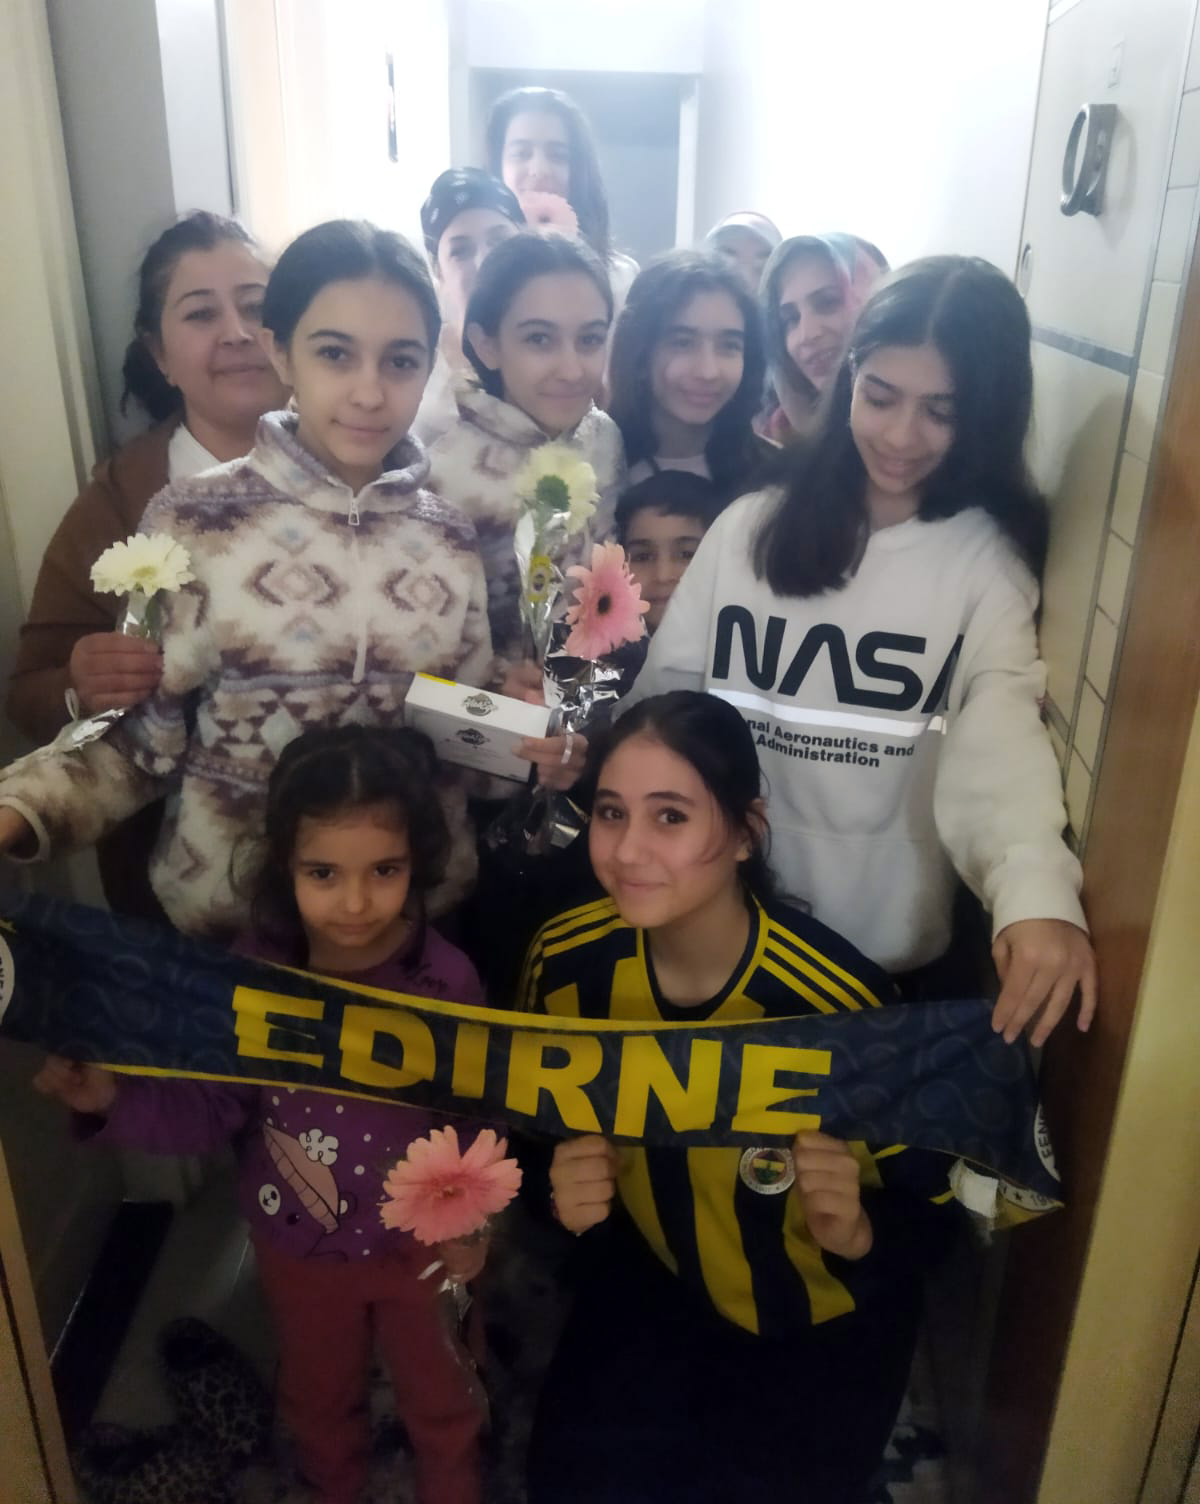 Edirne Derneğimiz, 8 Mart Dünya Kadınlar Gününde deprem mağduru kadınlara çiçek takdim etti